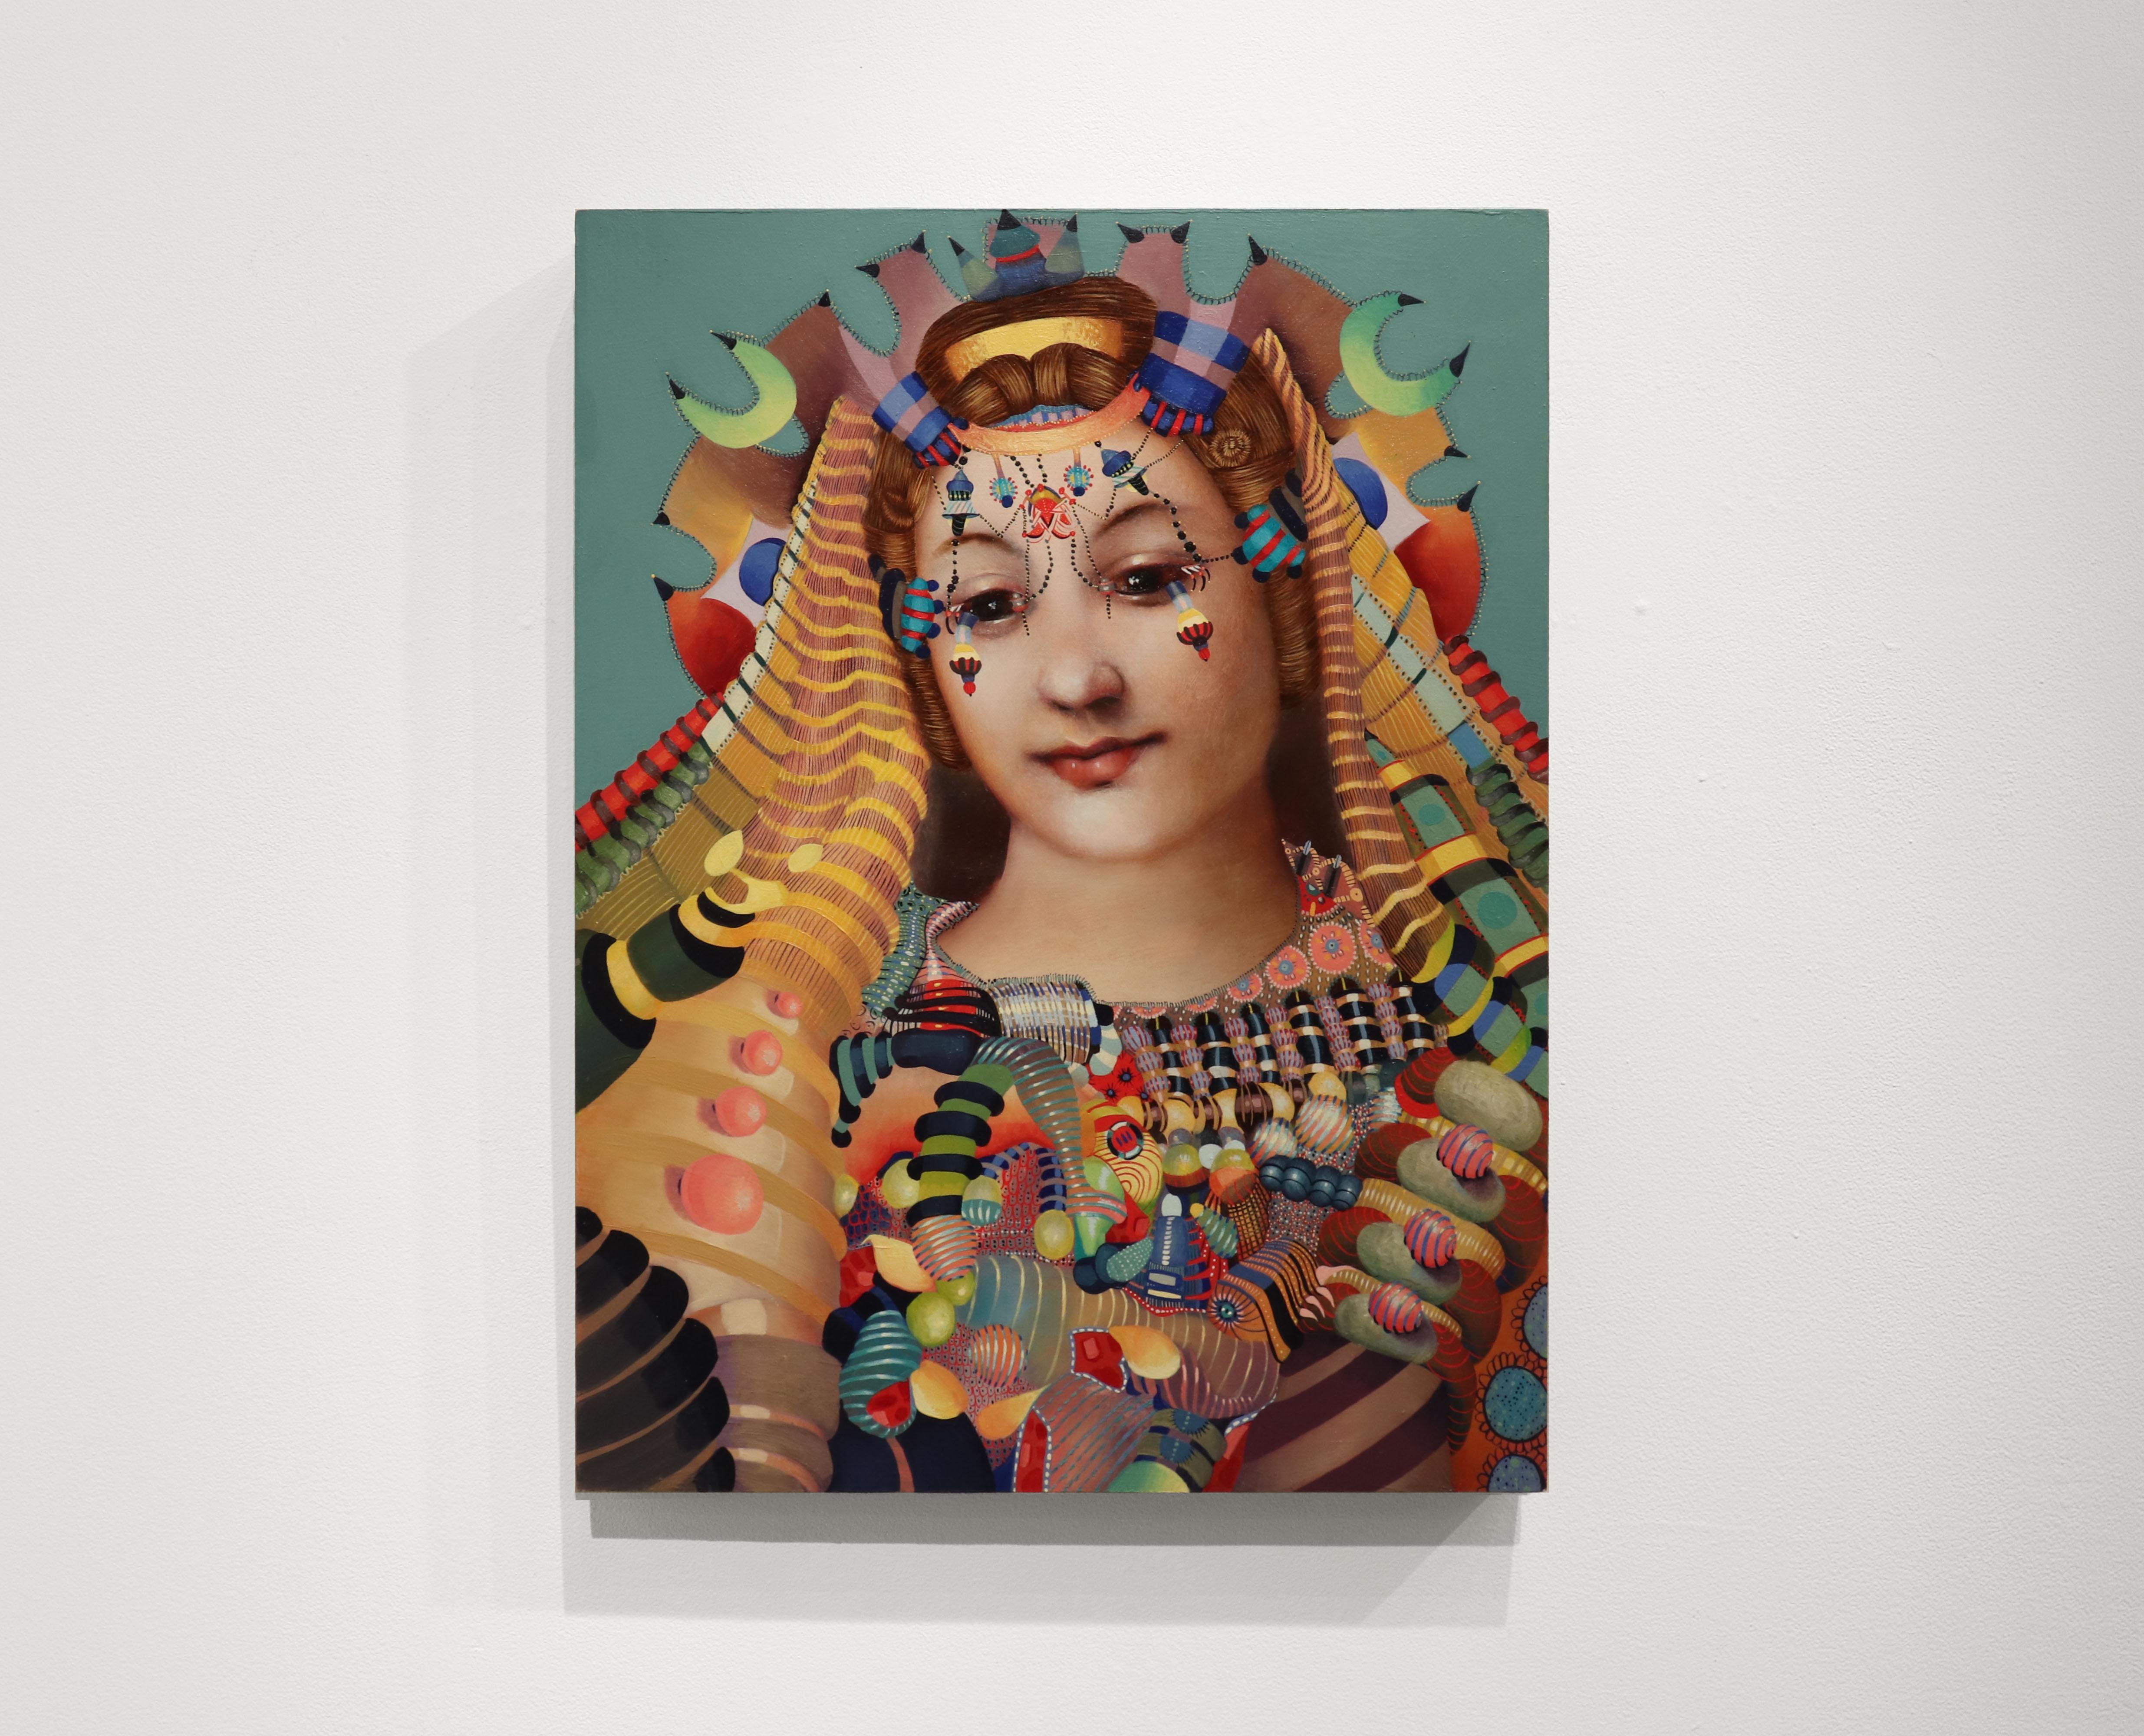 WOMAN 1 - Réalisme contemporain / Portrait de femme / Coiffure à bijoux - Painting de Jacob Hicks